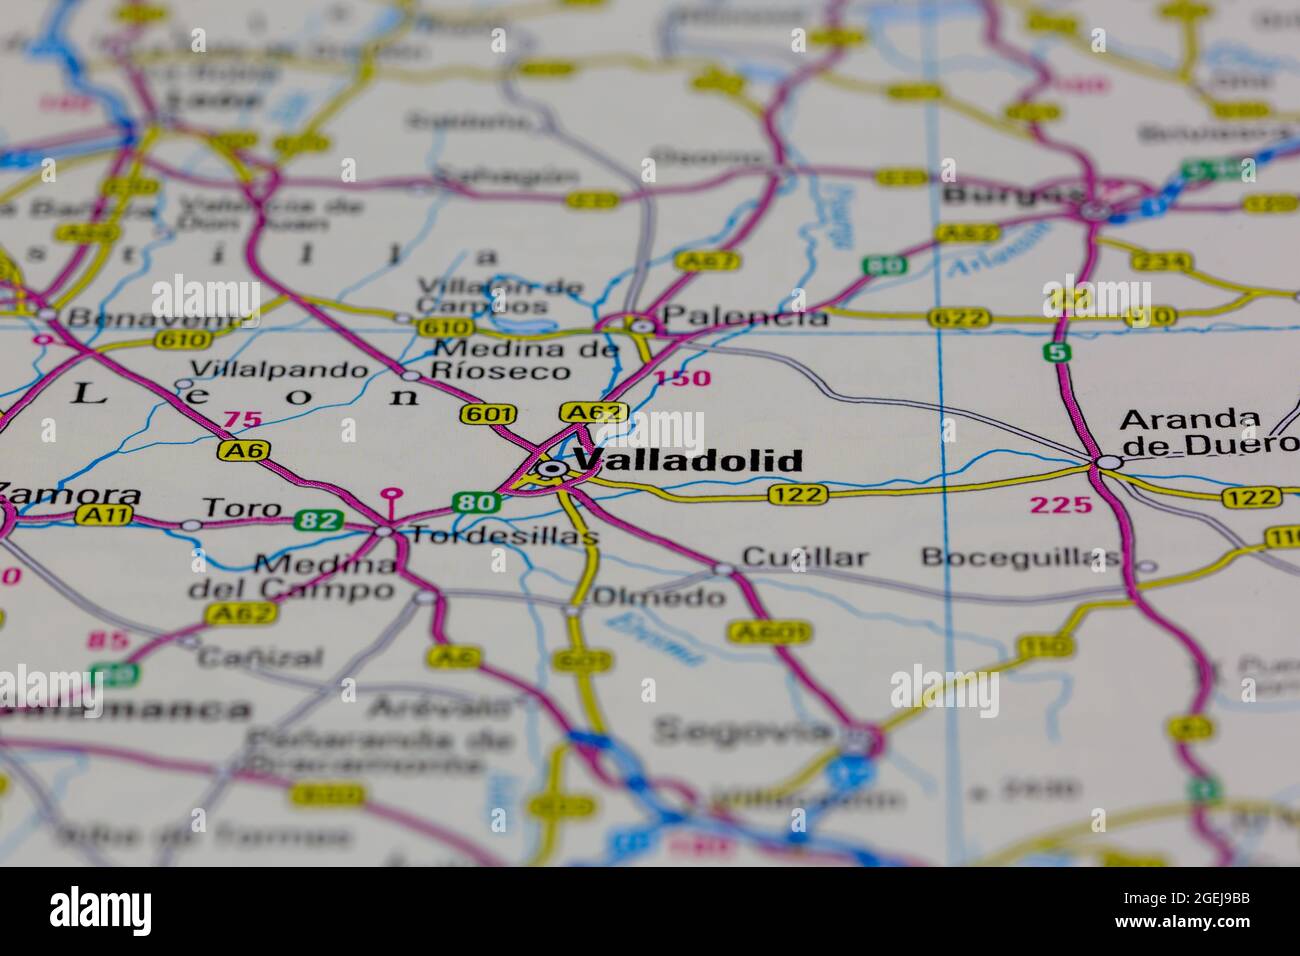 Valladolid España aparece en un mapa de carreteras o en un mapa geográfico Foto de stock